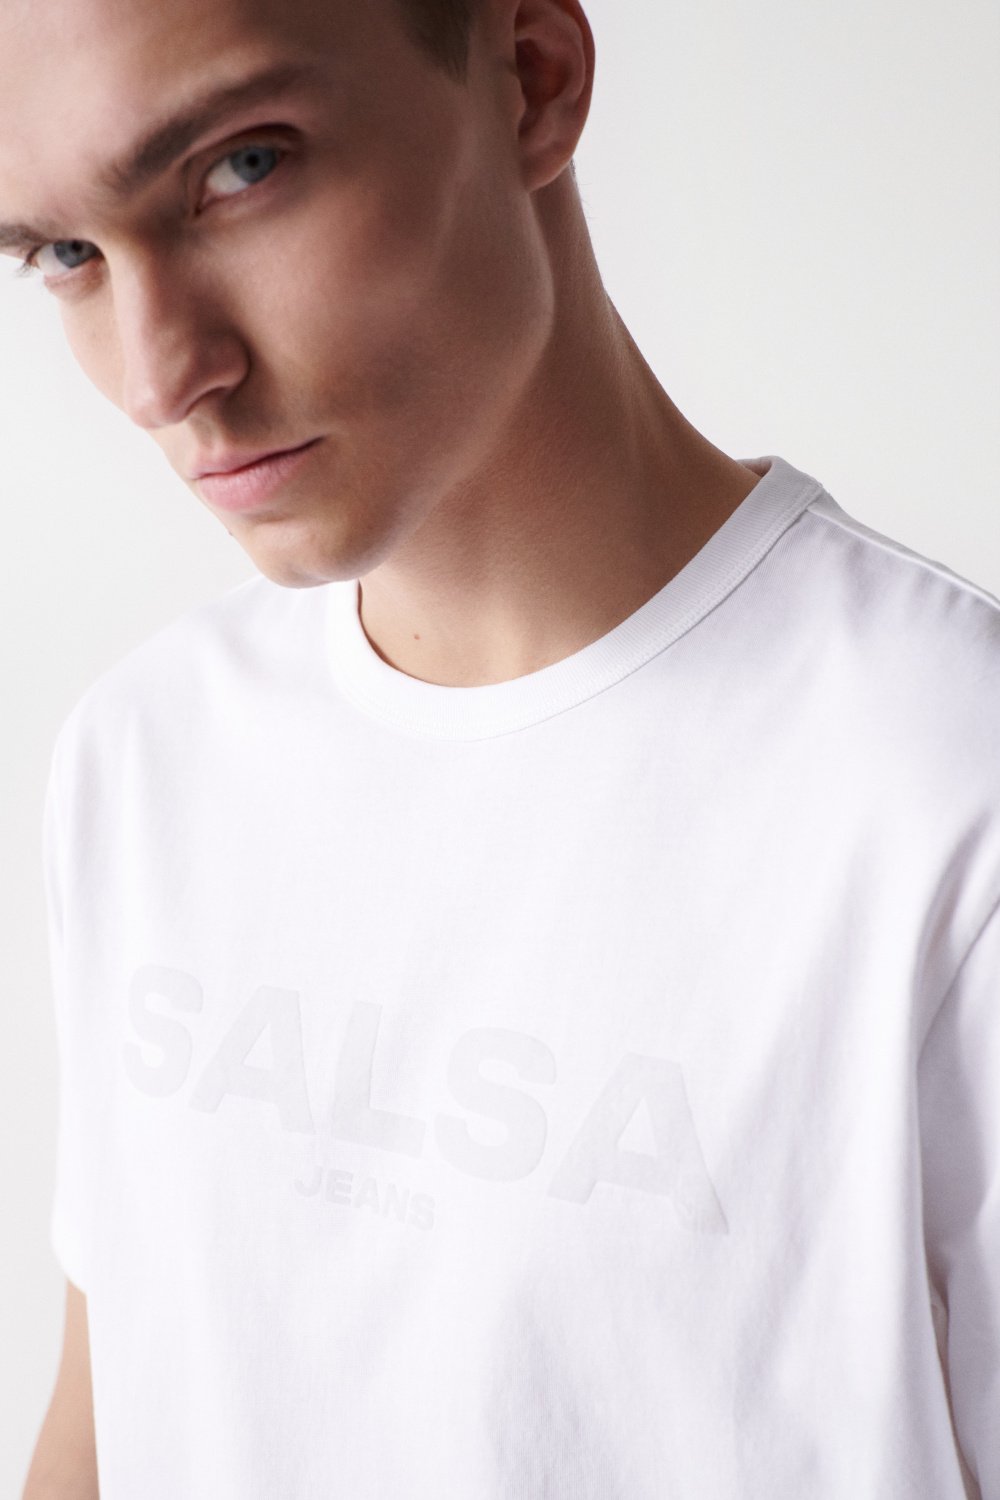 T-shirt avec logo Salsa aspect velours - Salsa